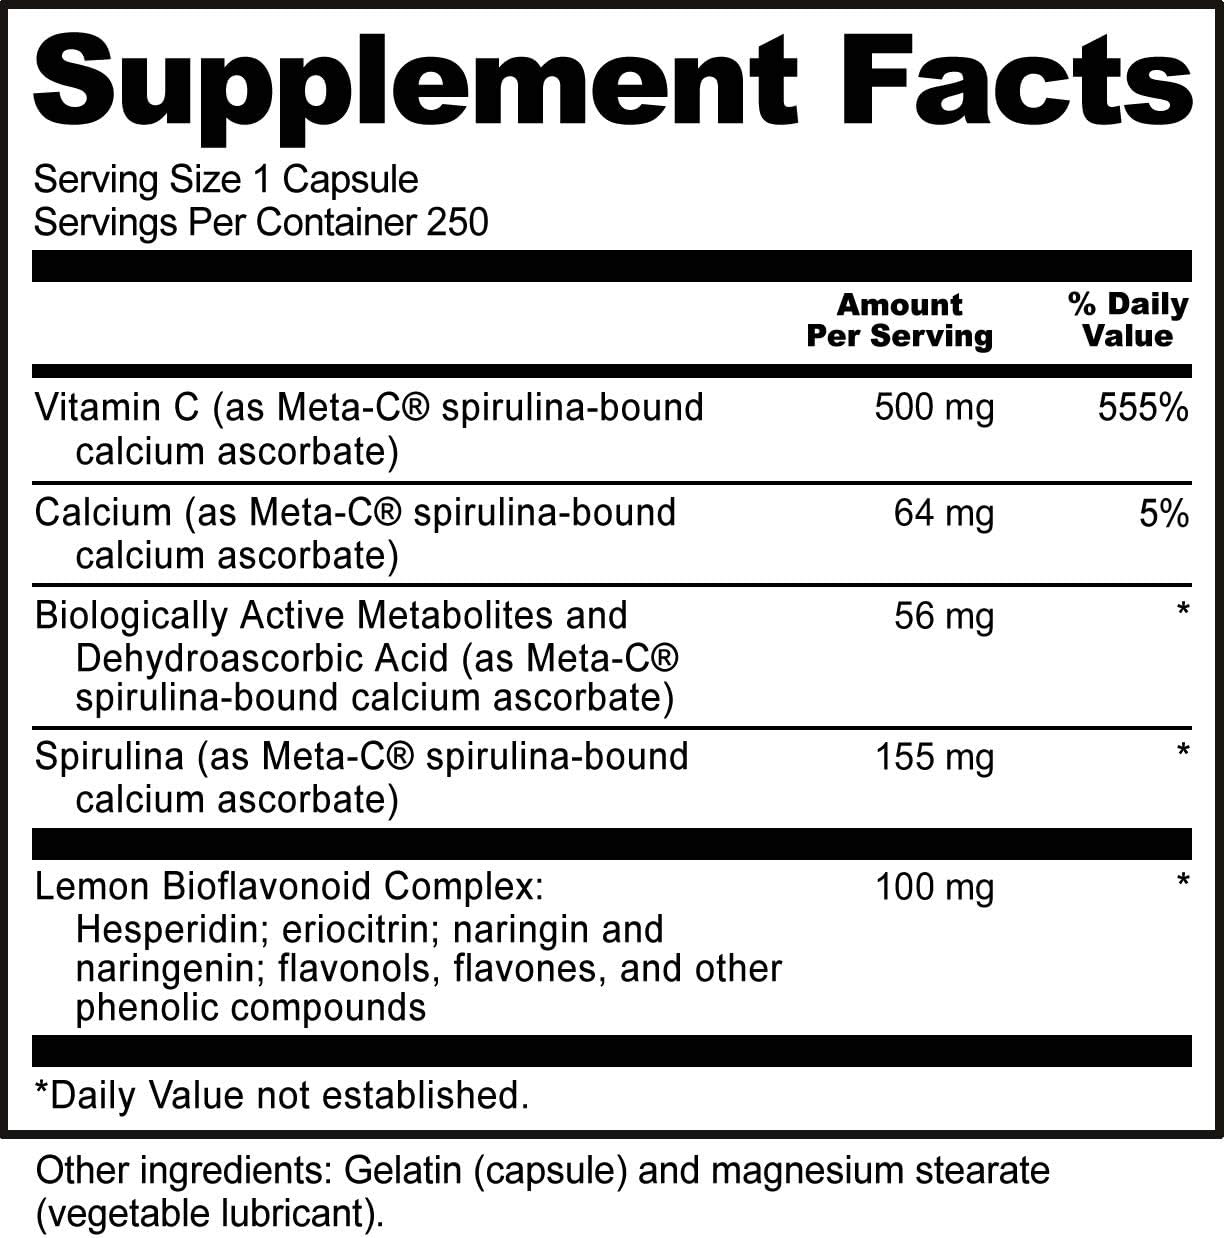 NutriBiotic Meta-C Capsules, 500 mg Spirulina-Bound Vitamin C, 250 Cou